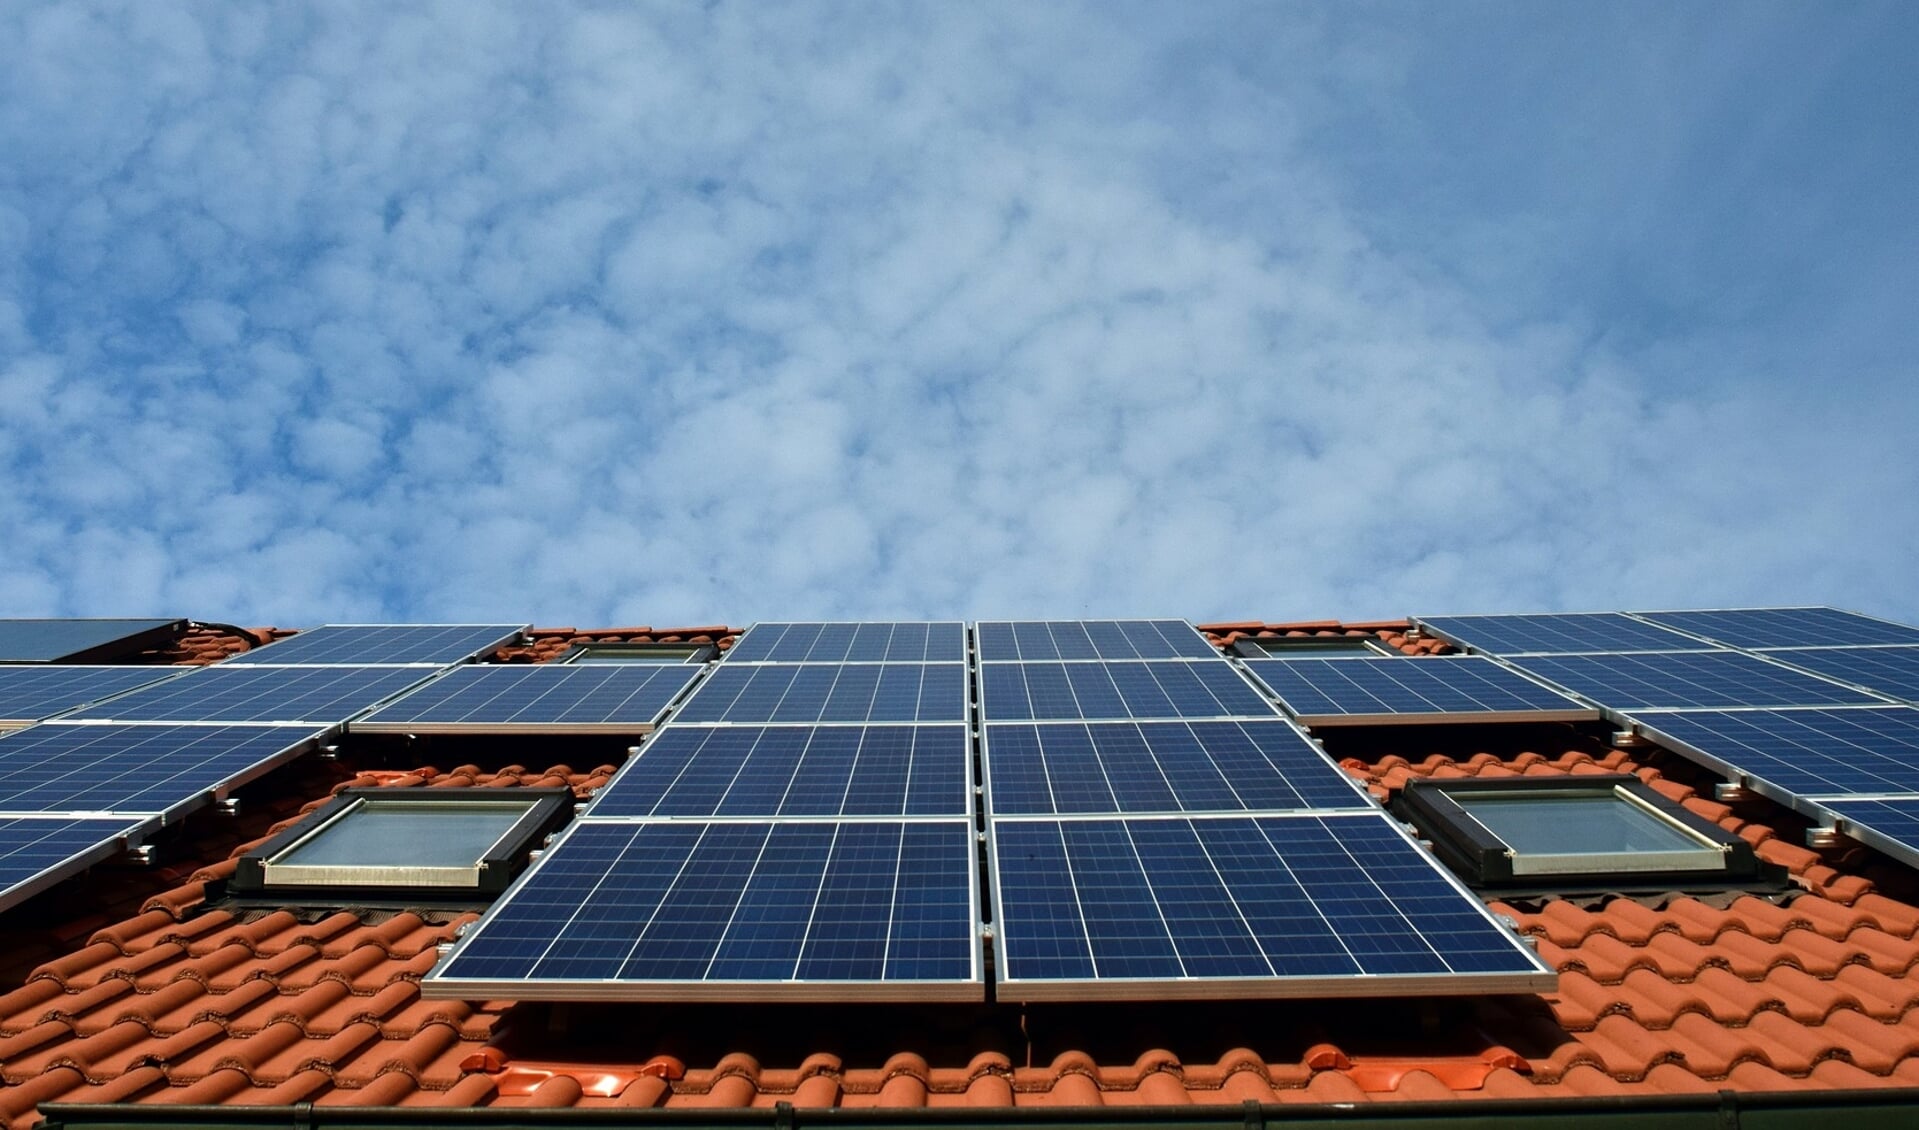 Inwoners maken steeds meer gebruik van duurzame energie. Op dit moment zijn er 2710 geregistreerde zonnepanelen installaties. 